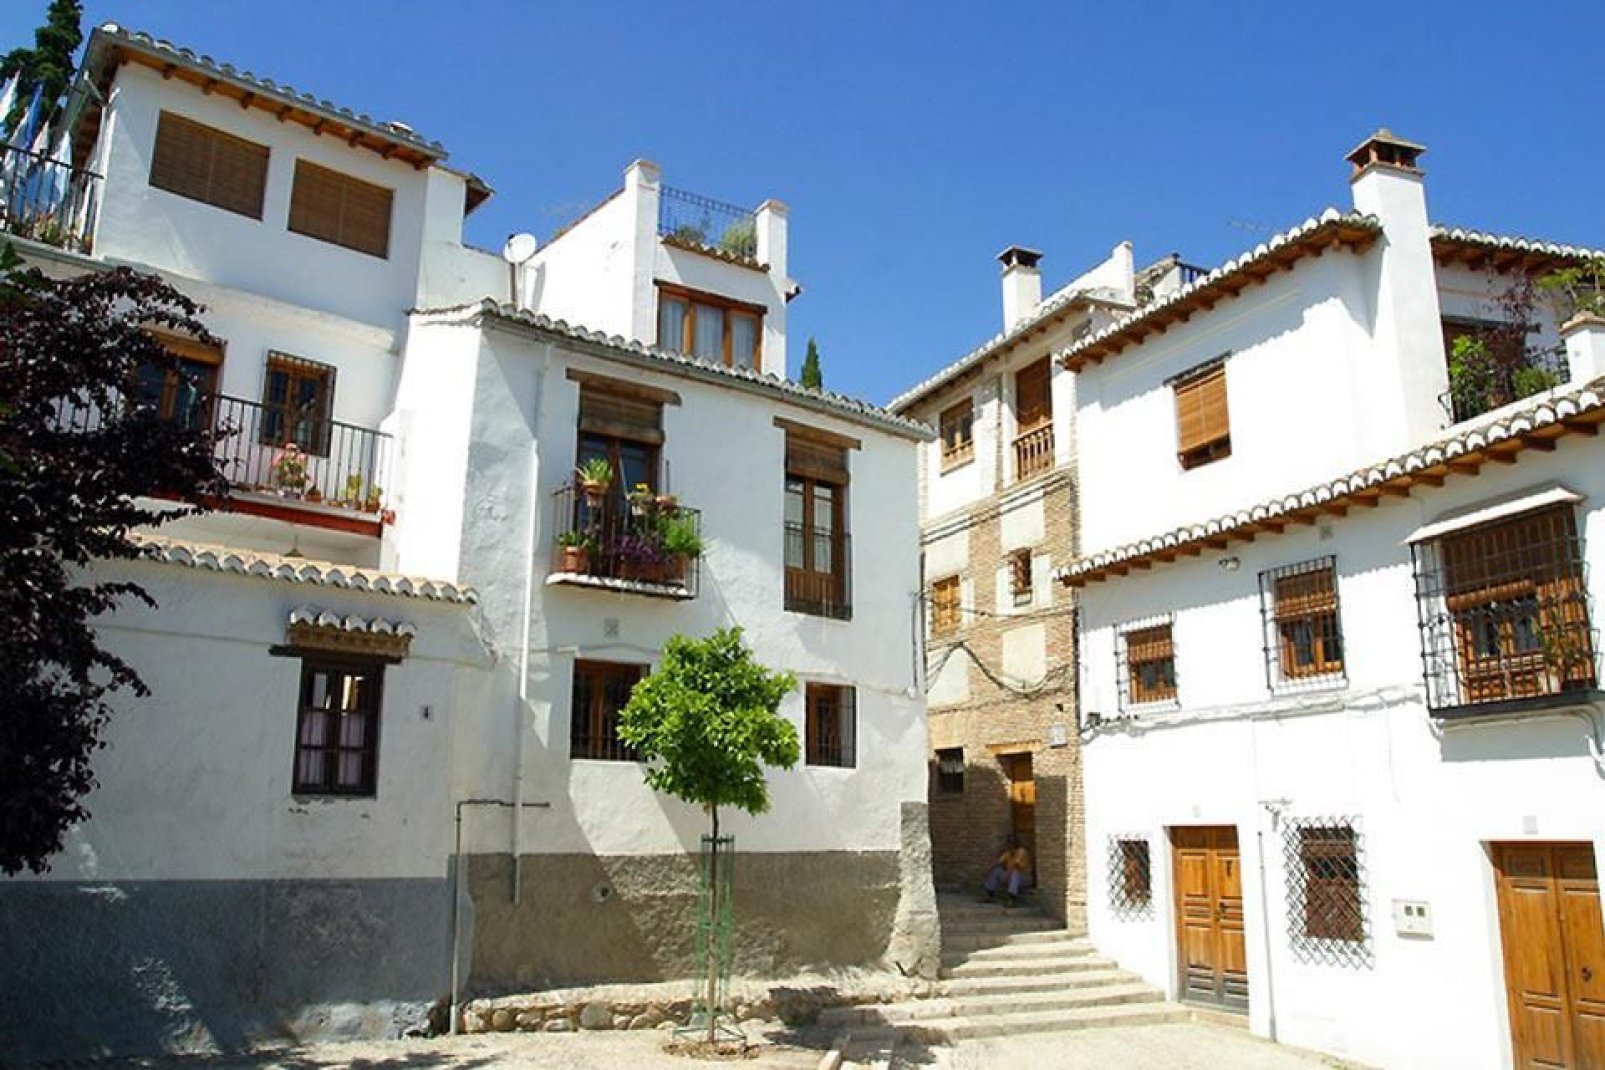 Die Stadt umfasst folgende Viertel: Albaicin, Beiro, Chana, Centre, Genil, Norte, Ronda und Zaidin.